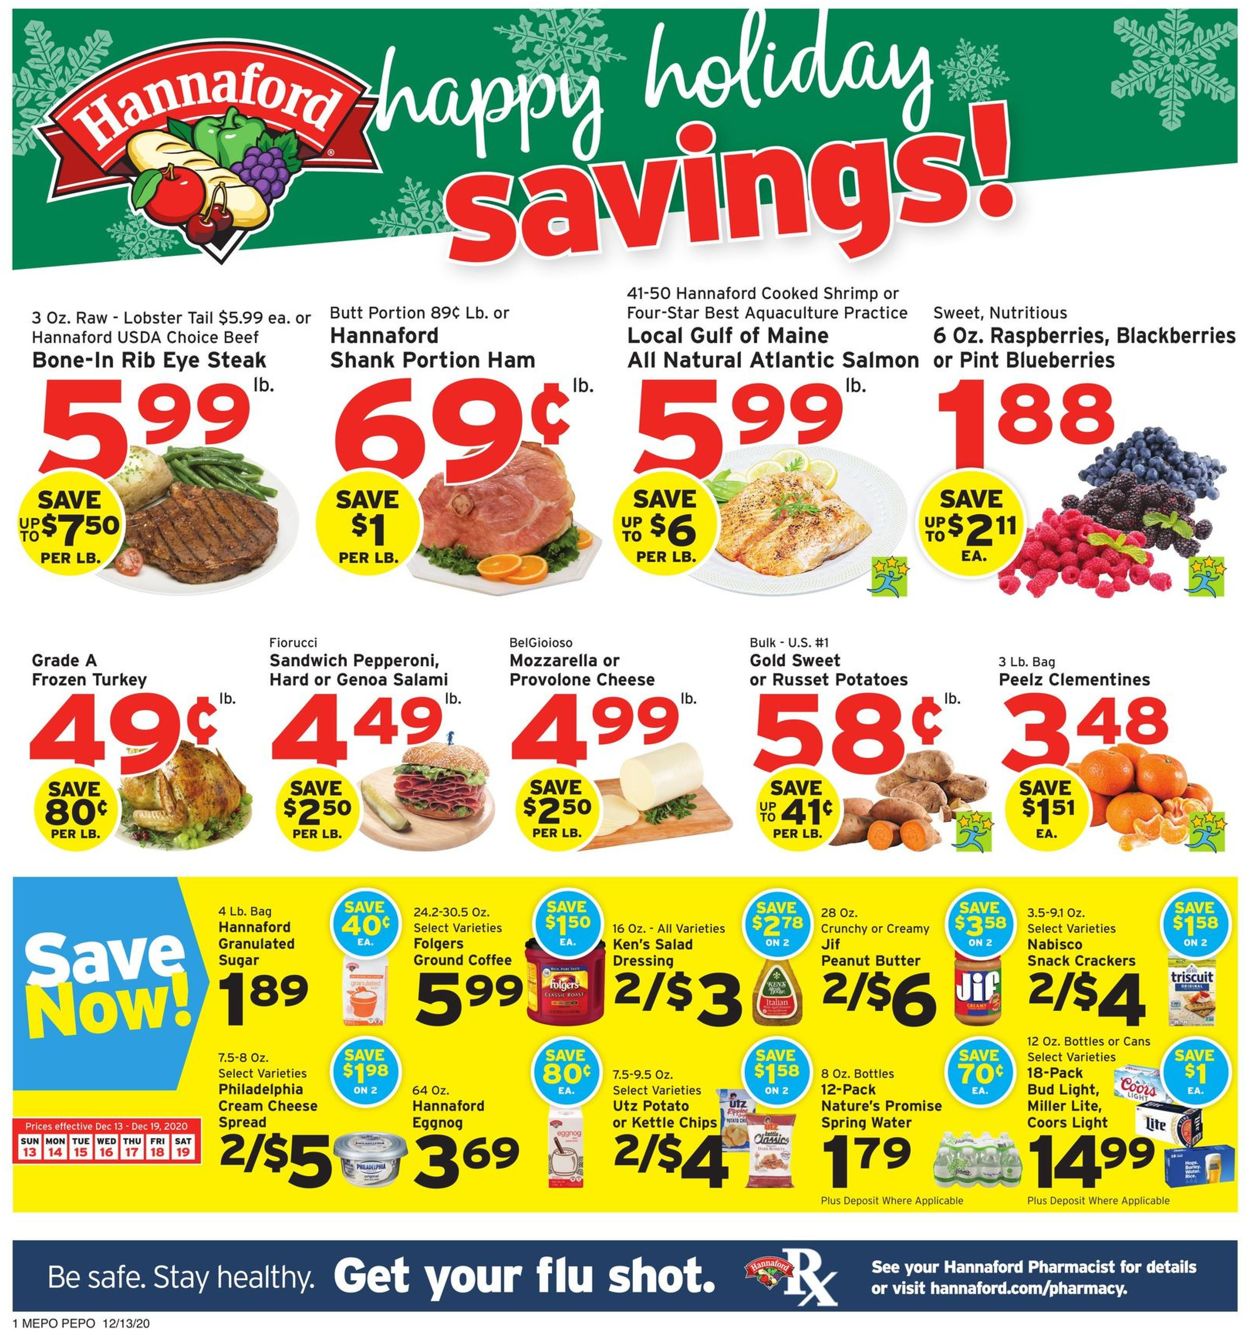 Catalogue Hannaford Holiday Savings 2020 from 12/13/2020